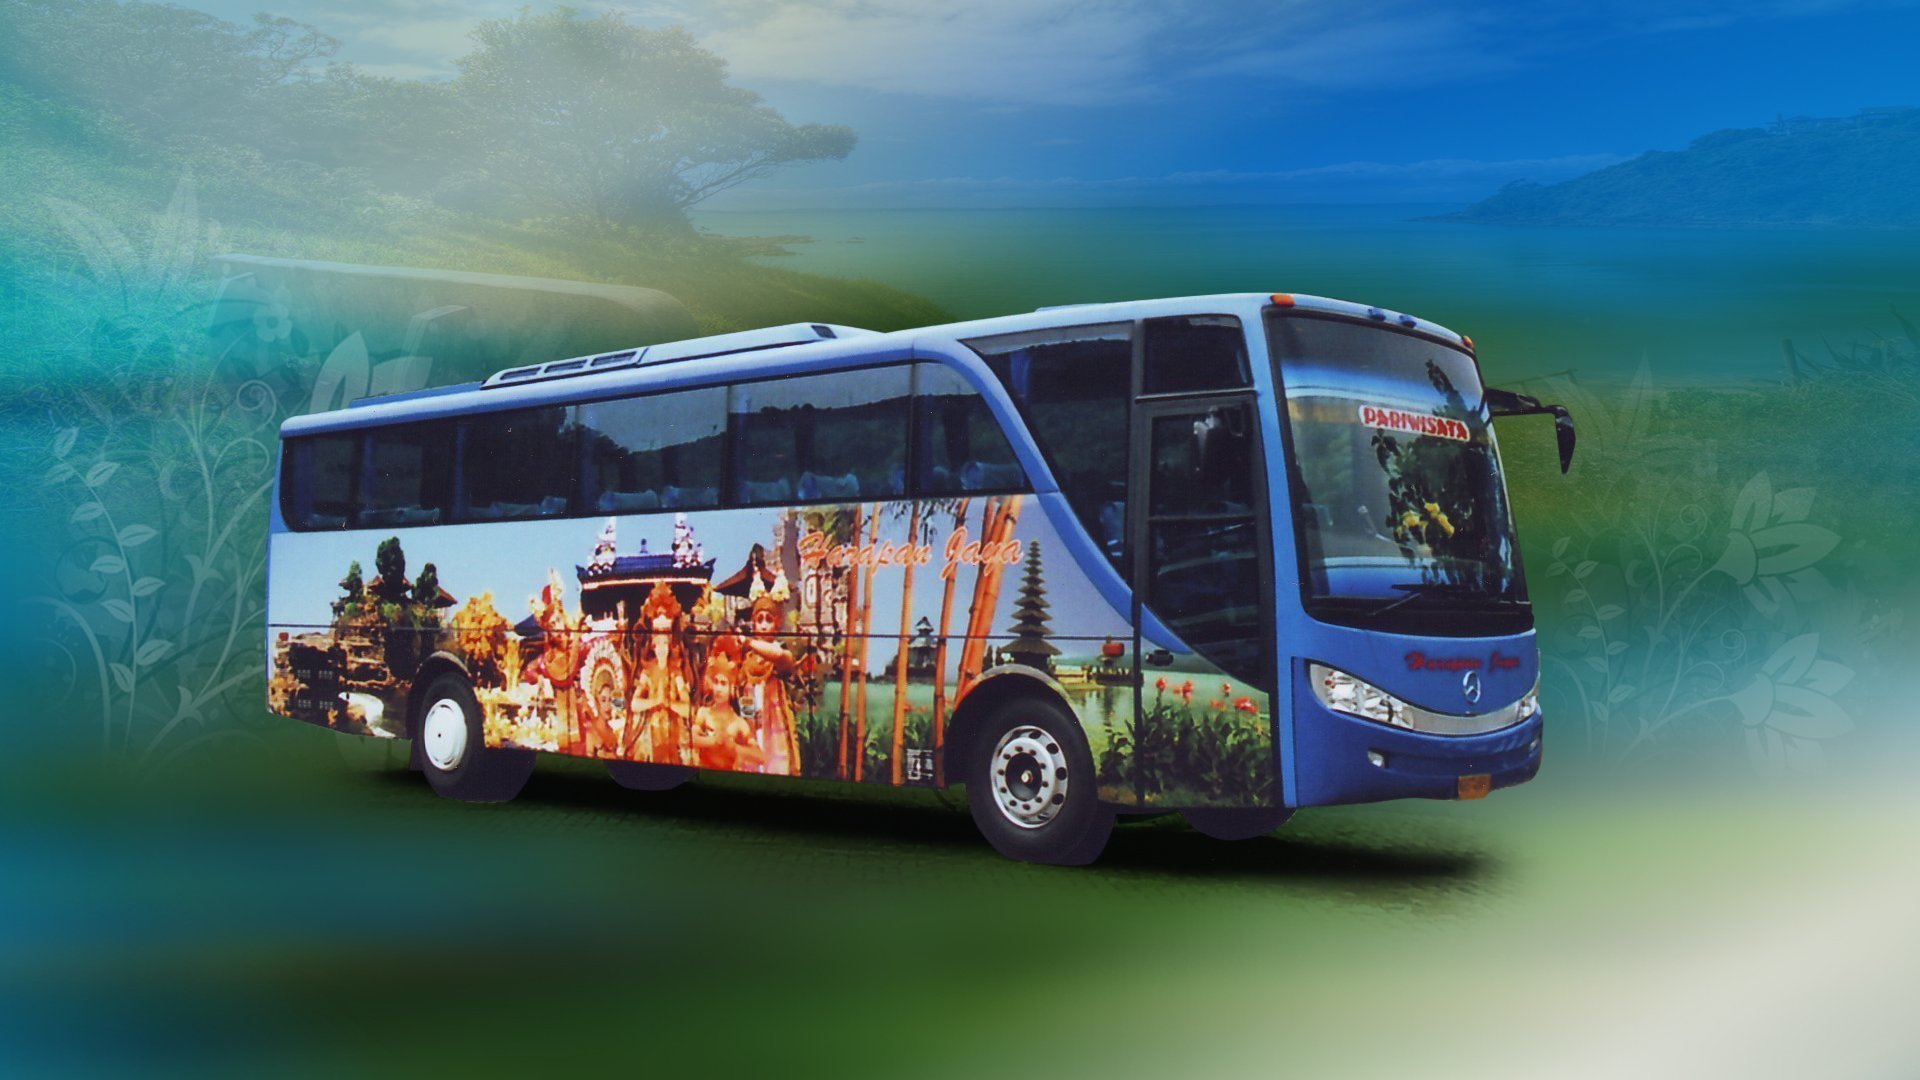 Автобус с15. Туристический автобус. Автобусный транспорт в туризме. Автобус на фоне природы. Автобус на красивом фоне.